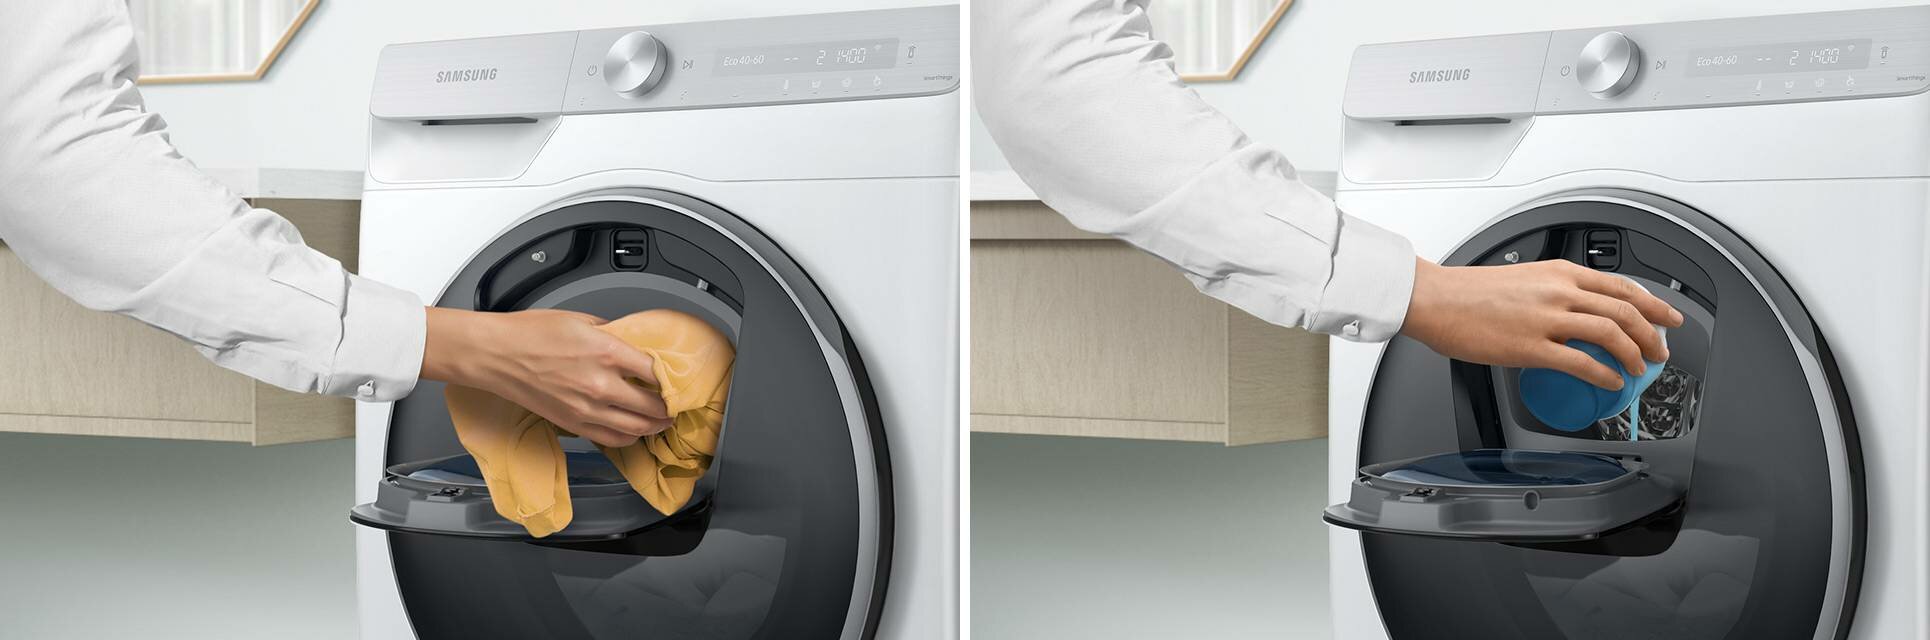 Możliwość dodania zapomnianych ubrań w trakcie prania 